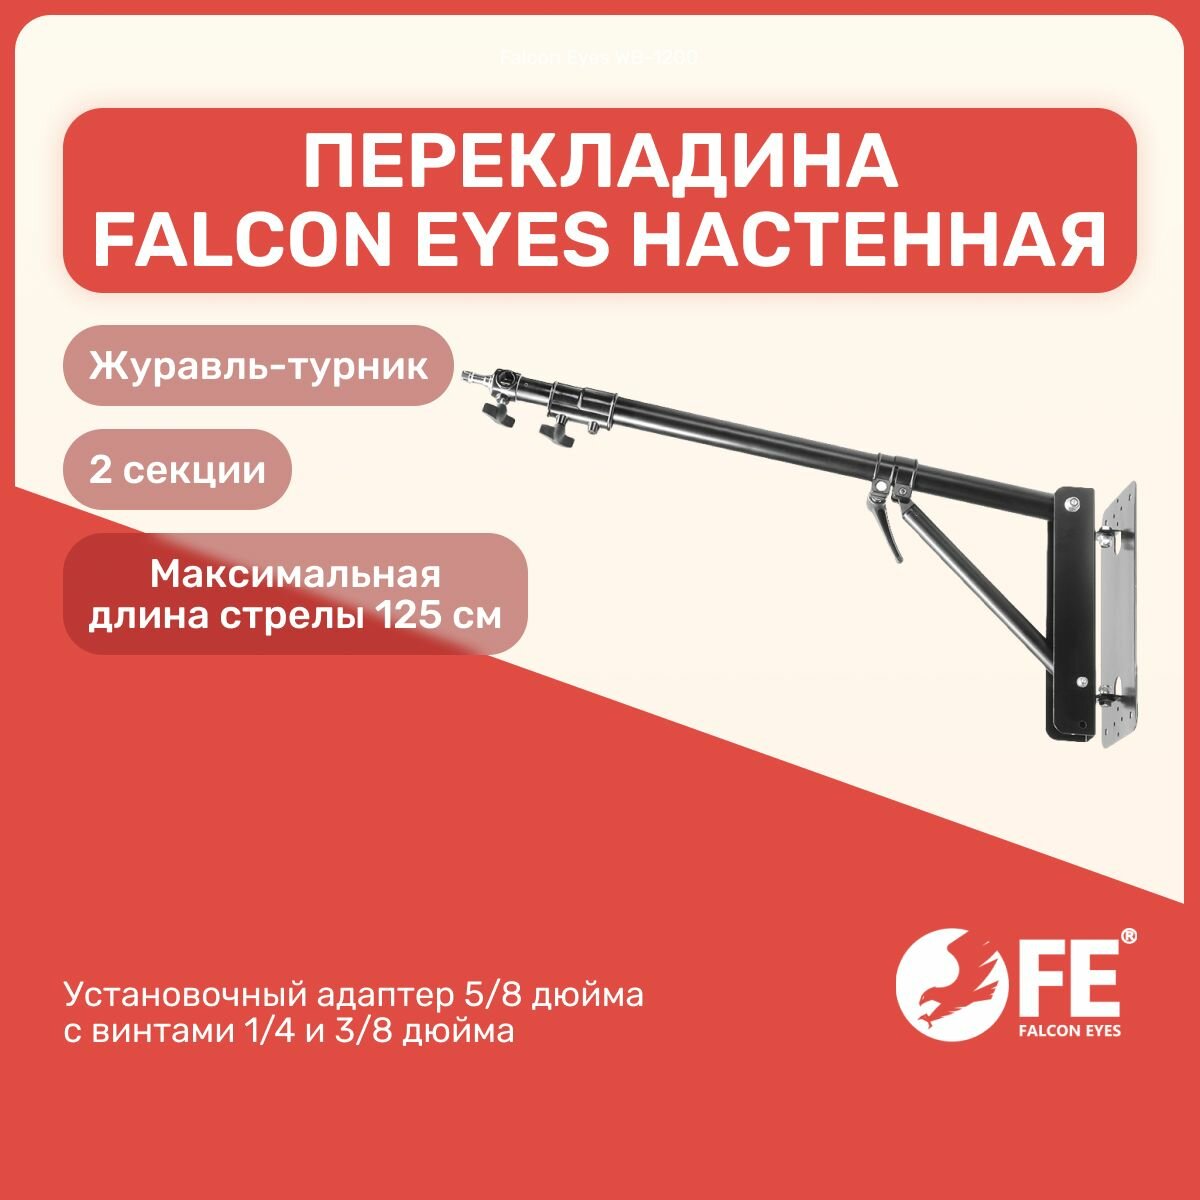 Перекладина Falcon Eyes WB-1200 настенная (журавль-турник) для осветительного оборудования, студийное оборудование для фото и видео съемок